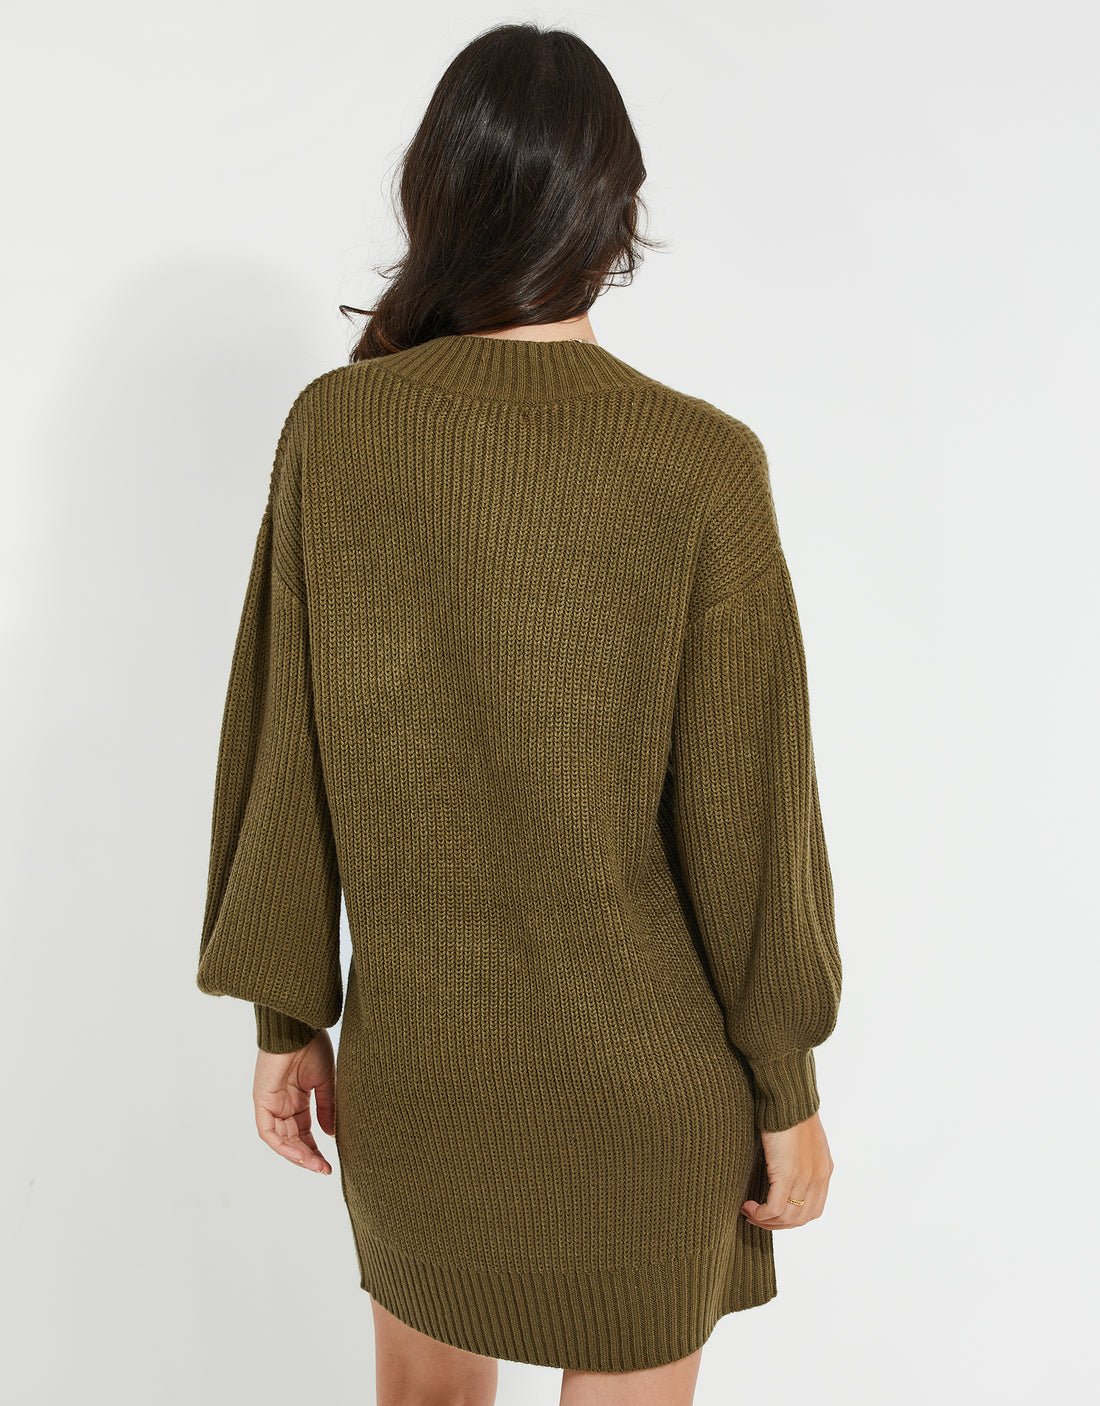 https://threadbare.com/cdn/shop/products/womens-olive-green-knitted-sweater-ladies-jumper-dress-tbli06070b-2_1100x.jpg?v=1663067969